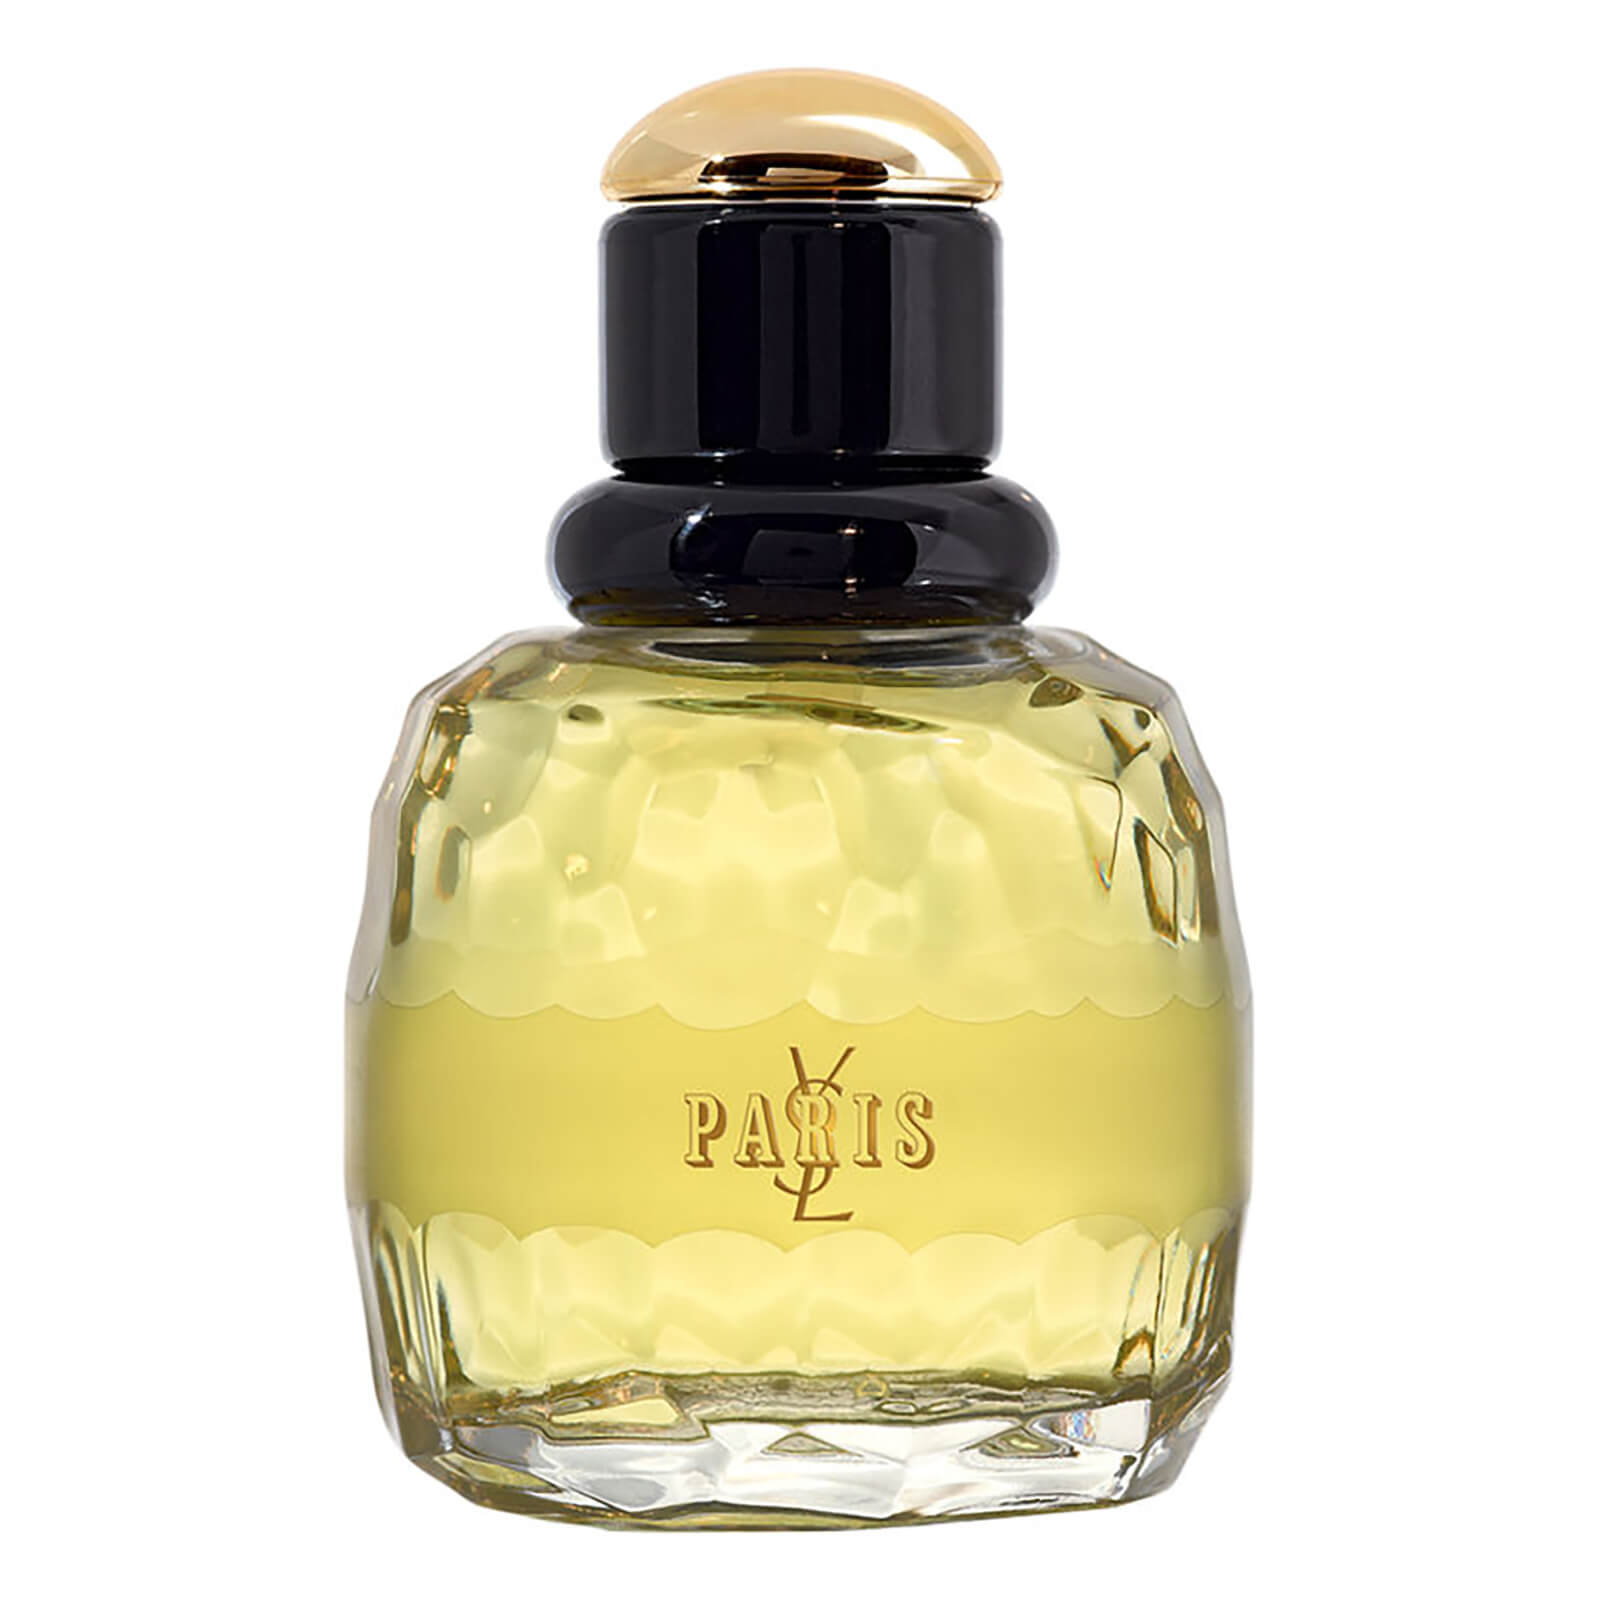 Yves Saint Laurent Paris Eau de Parfum - 50ml